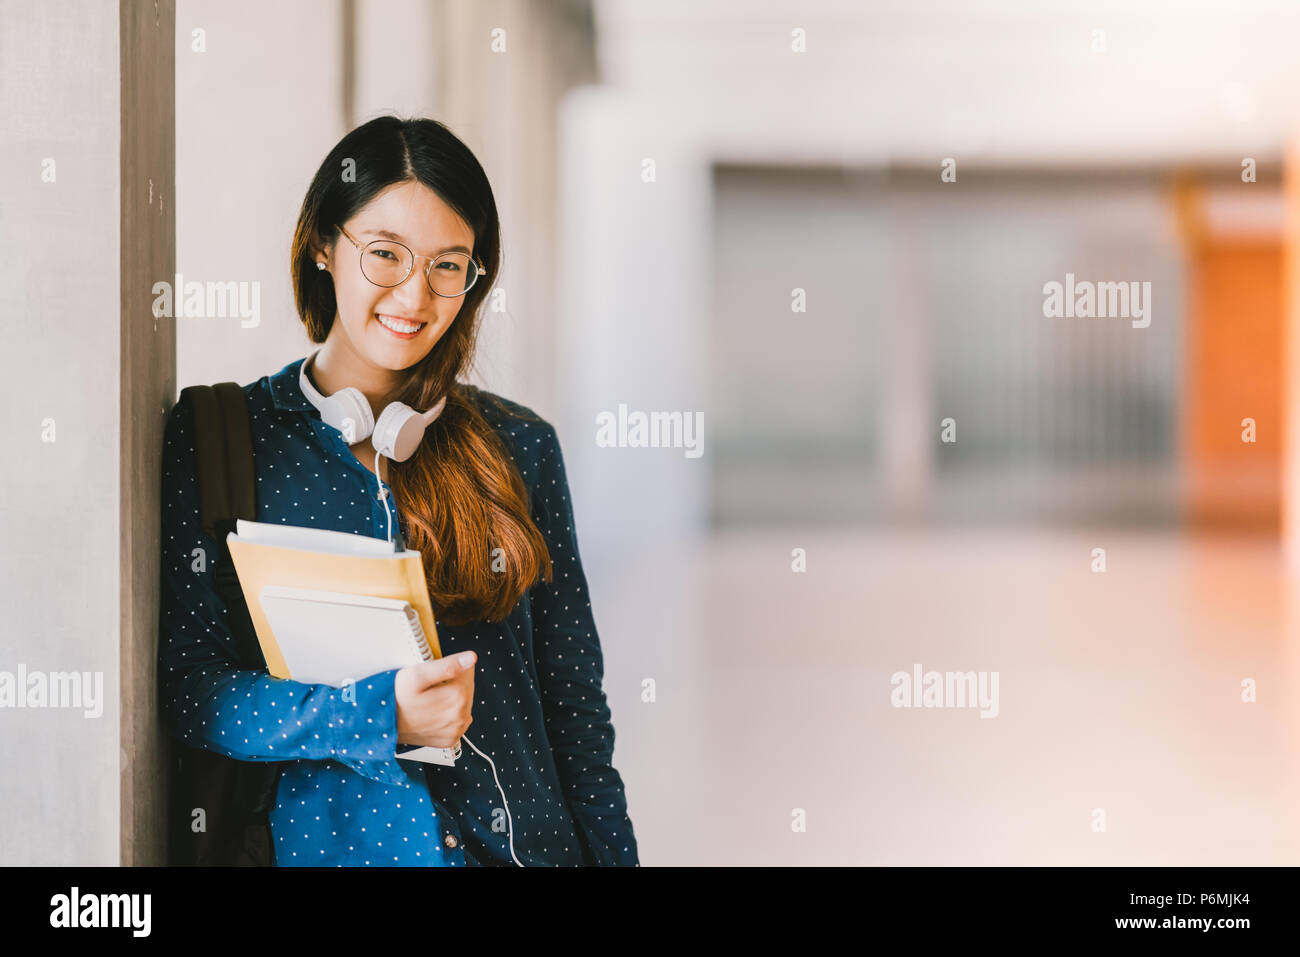 Belle jeune fille asiatique high school ou college student wearing eyeglasses, smiling in university campus avec copie espace. Concept de l'éducation Banque D'Images